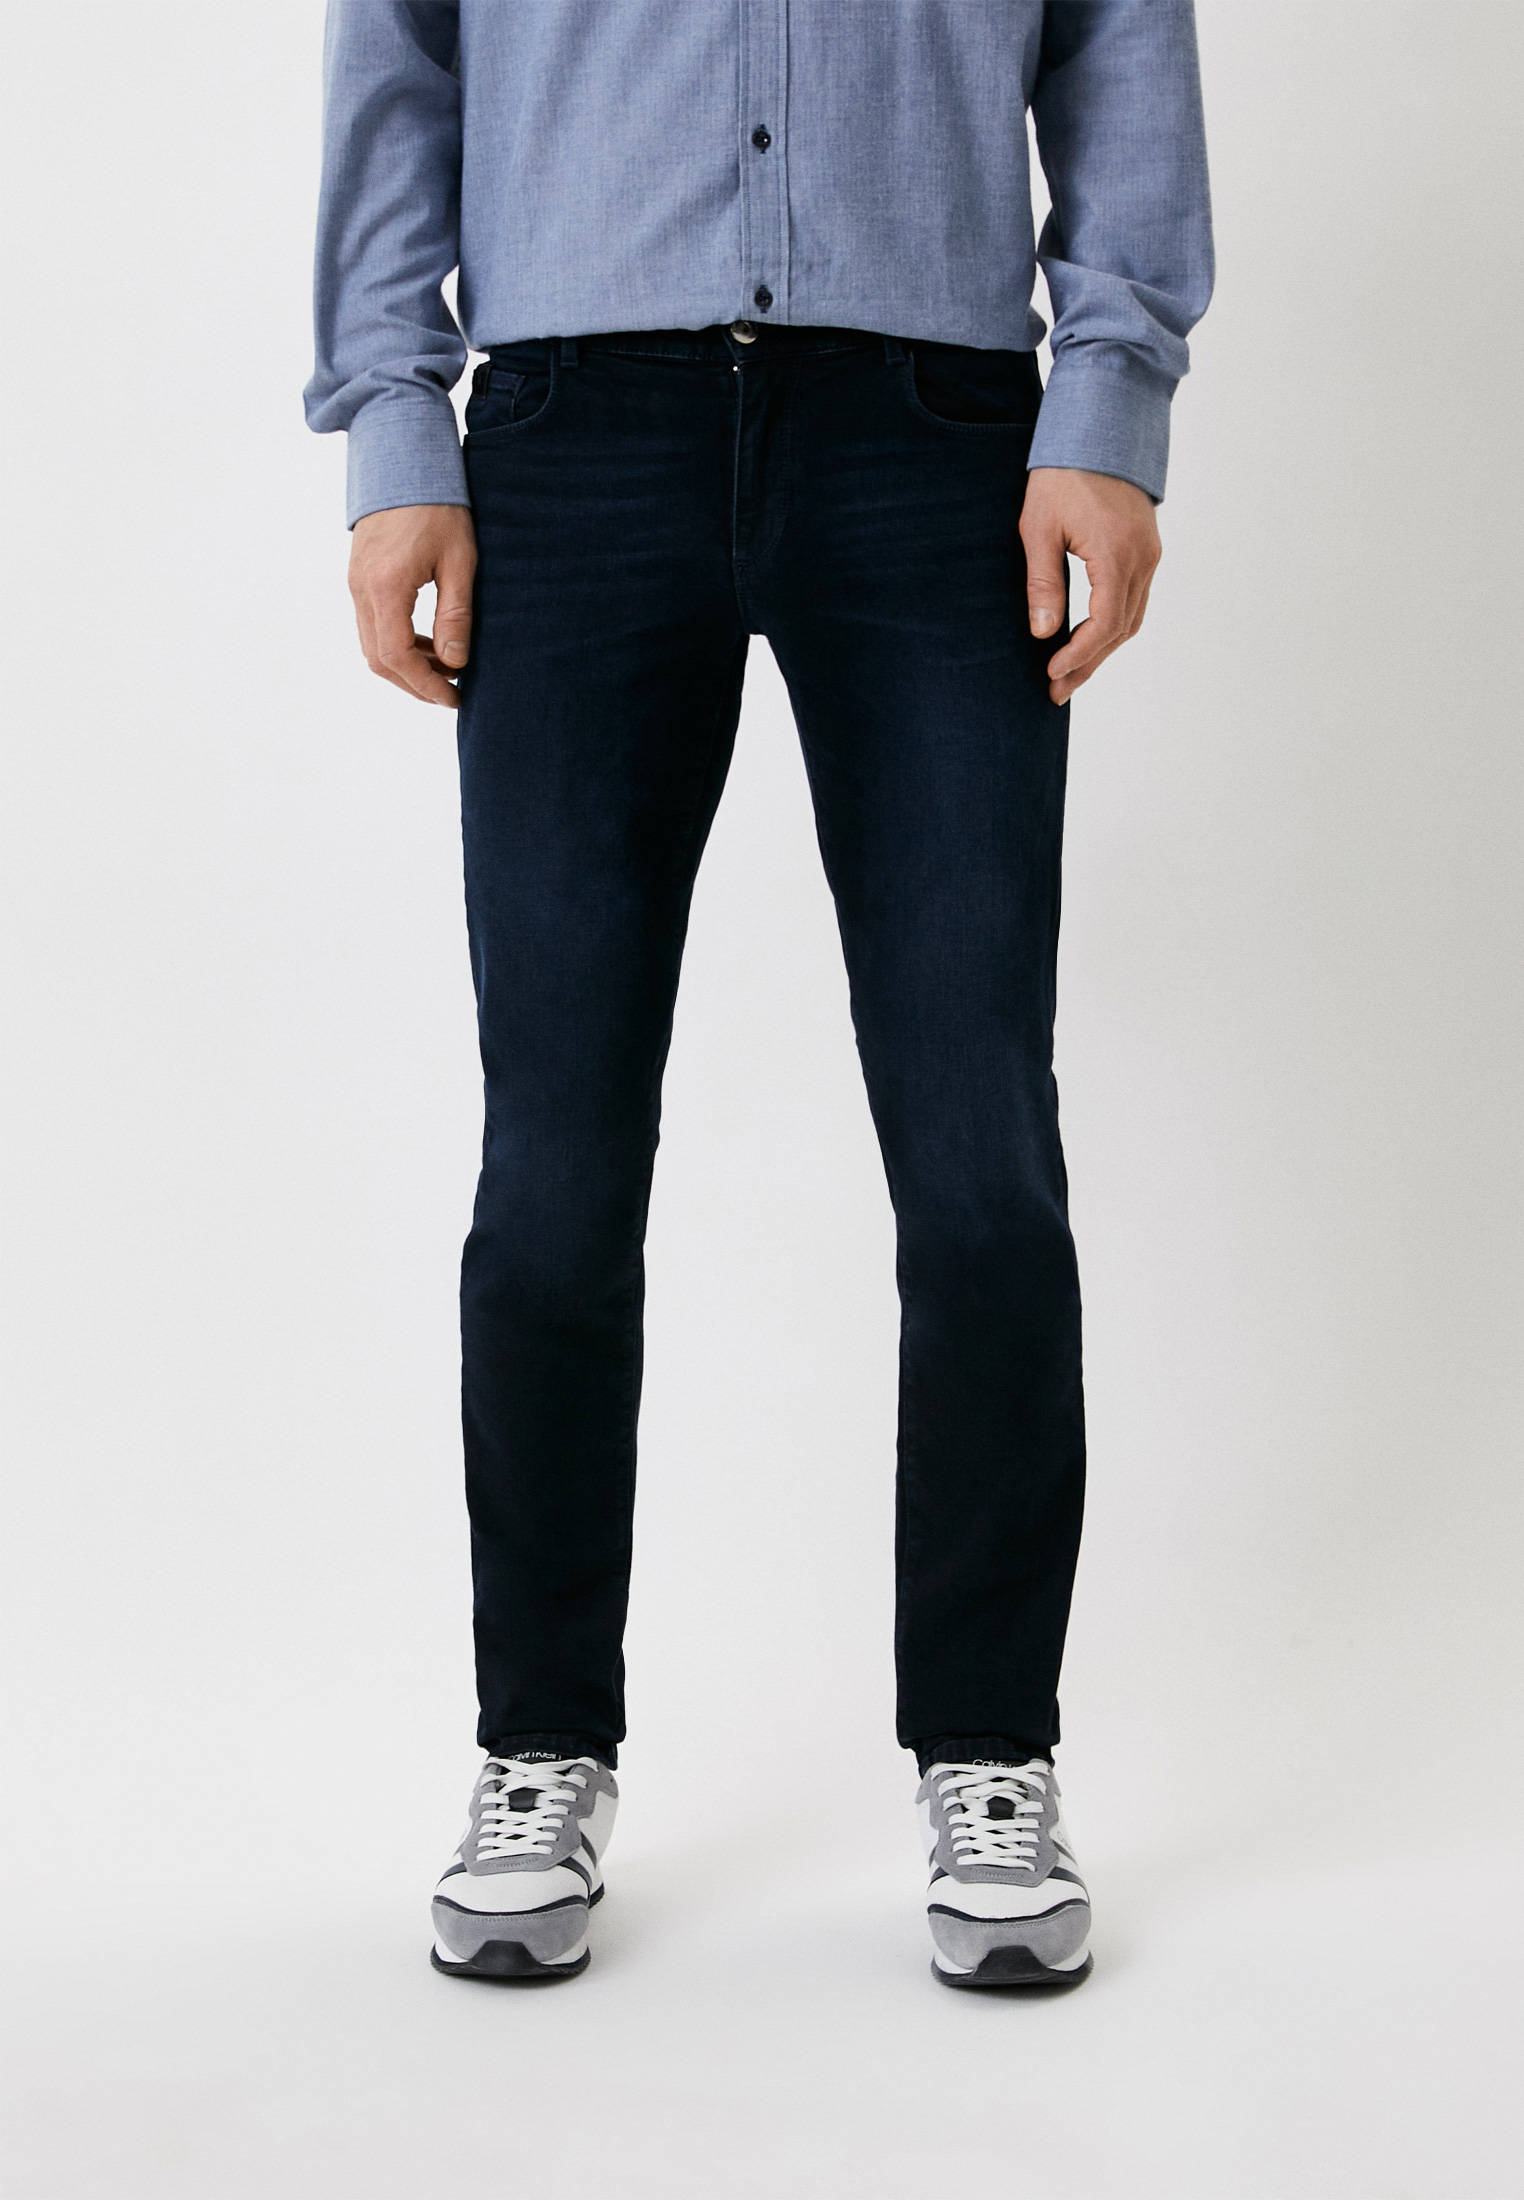 Мужские зауженные джинсы Trussardi (Труссарди) 52J00000-1T002676-C-002: изображение 1